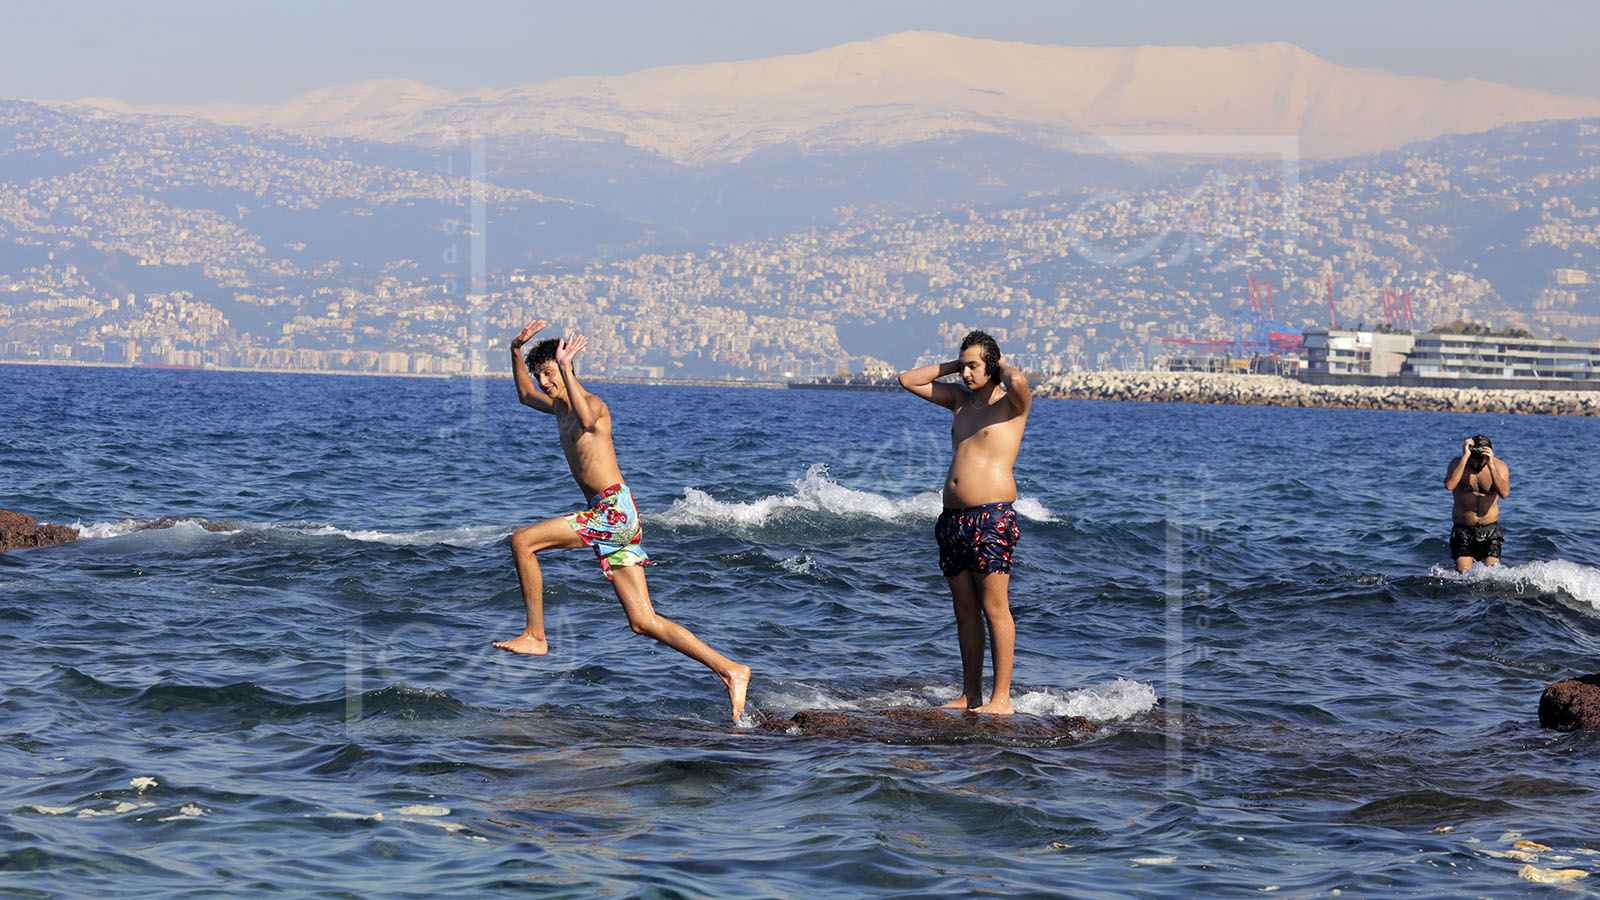 شواطىء لبنان: أين تسبحون بأمان.. والمواقع الملوثة والخطرة